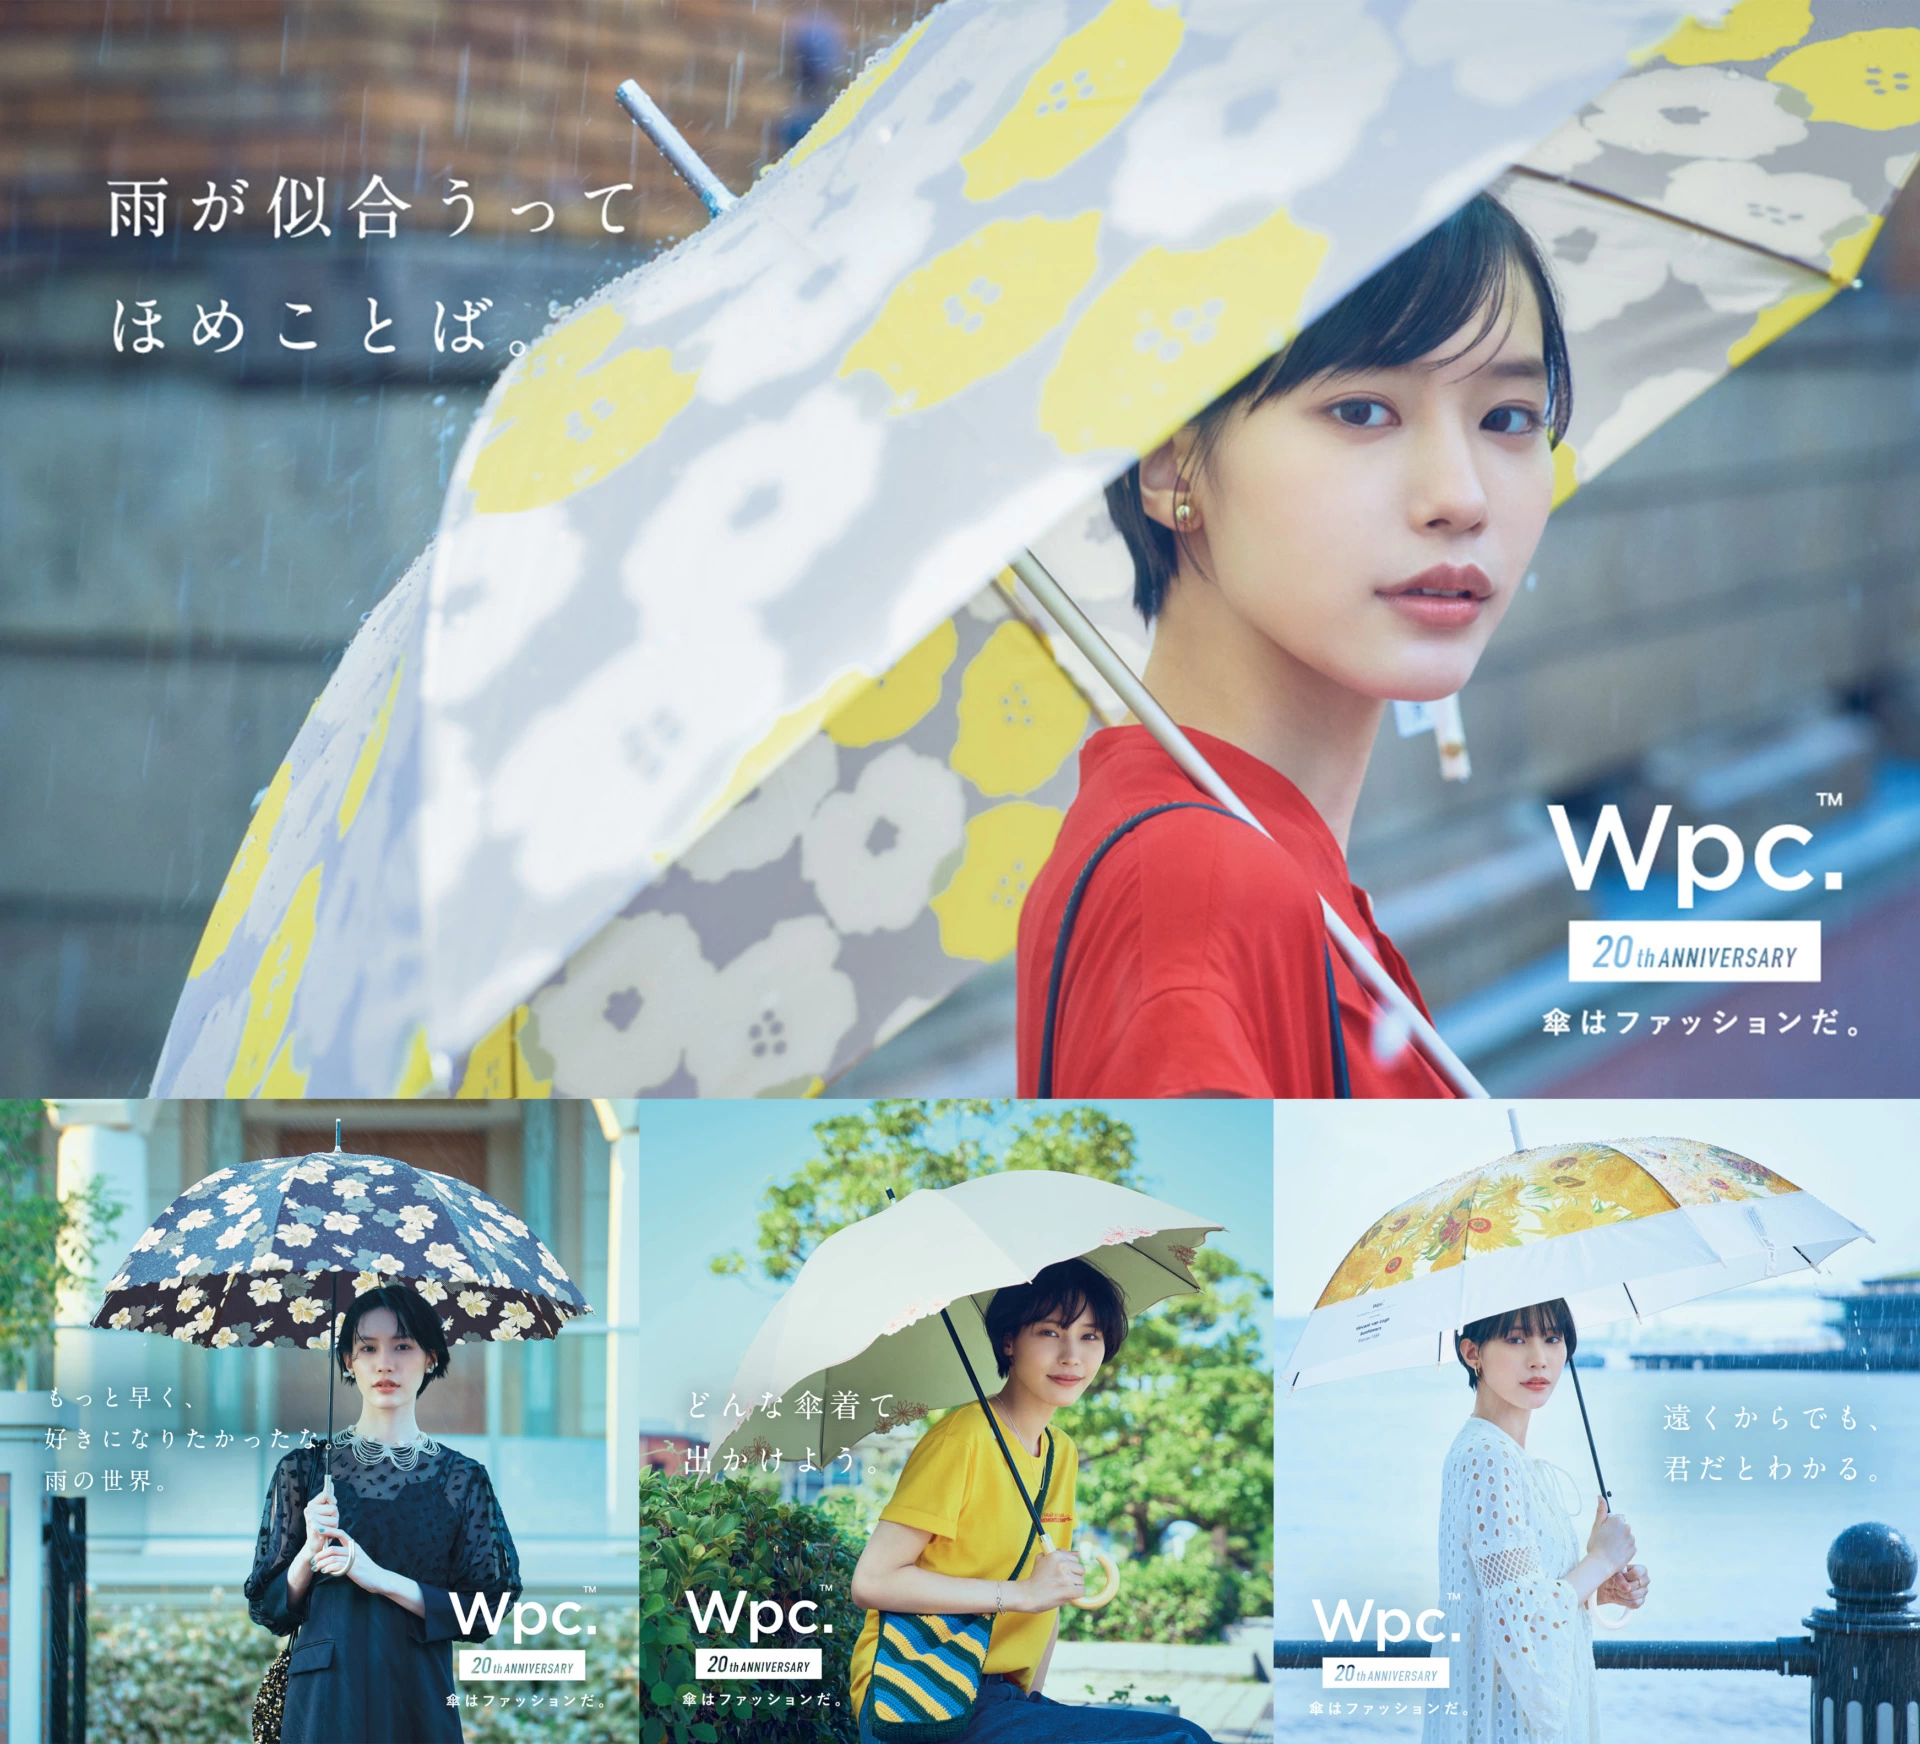 Wpc.『傘はファッションだ。』